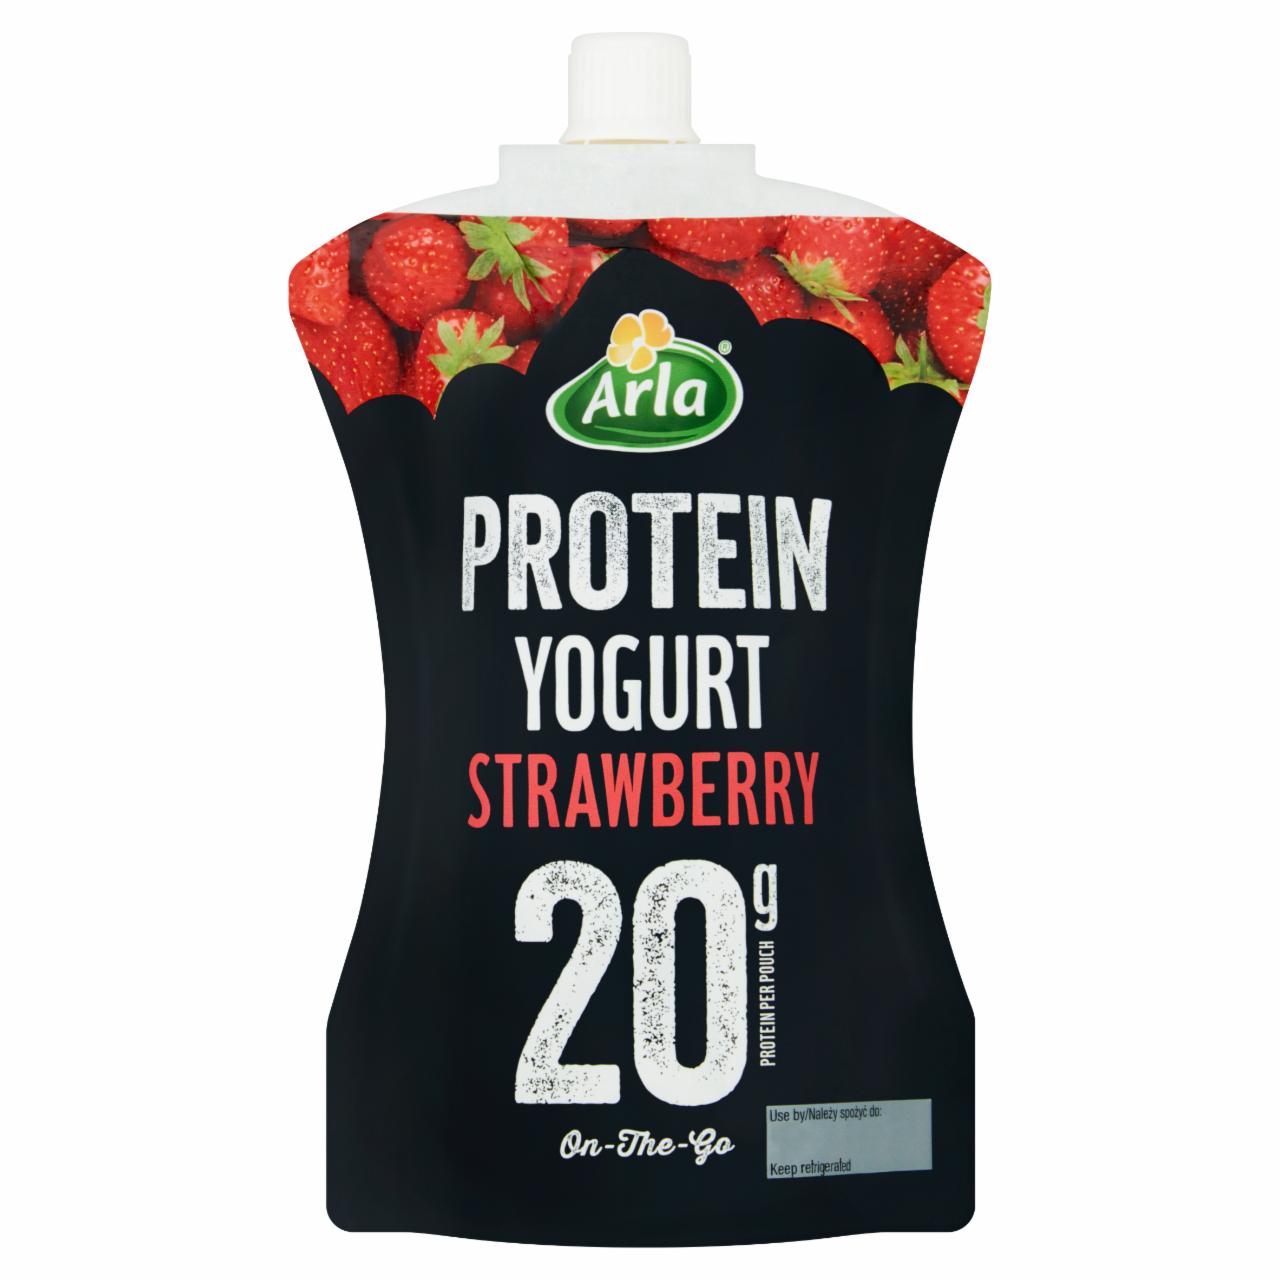 Zdjęcia - Protein yogurt strawberry Arla